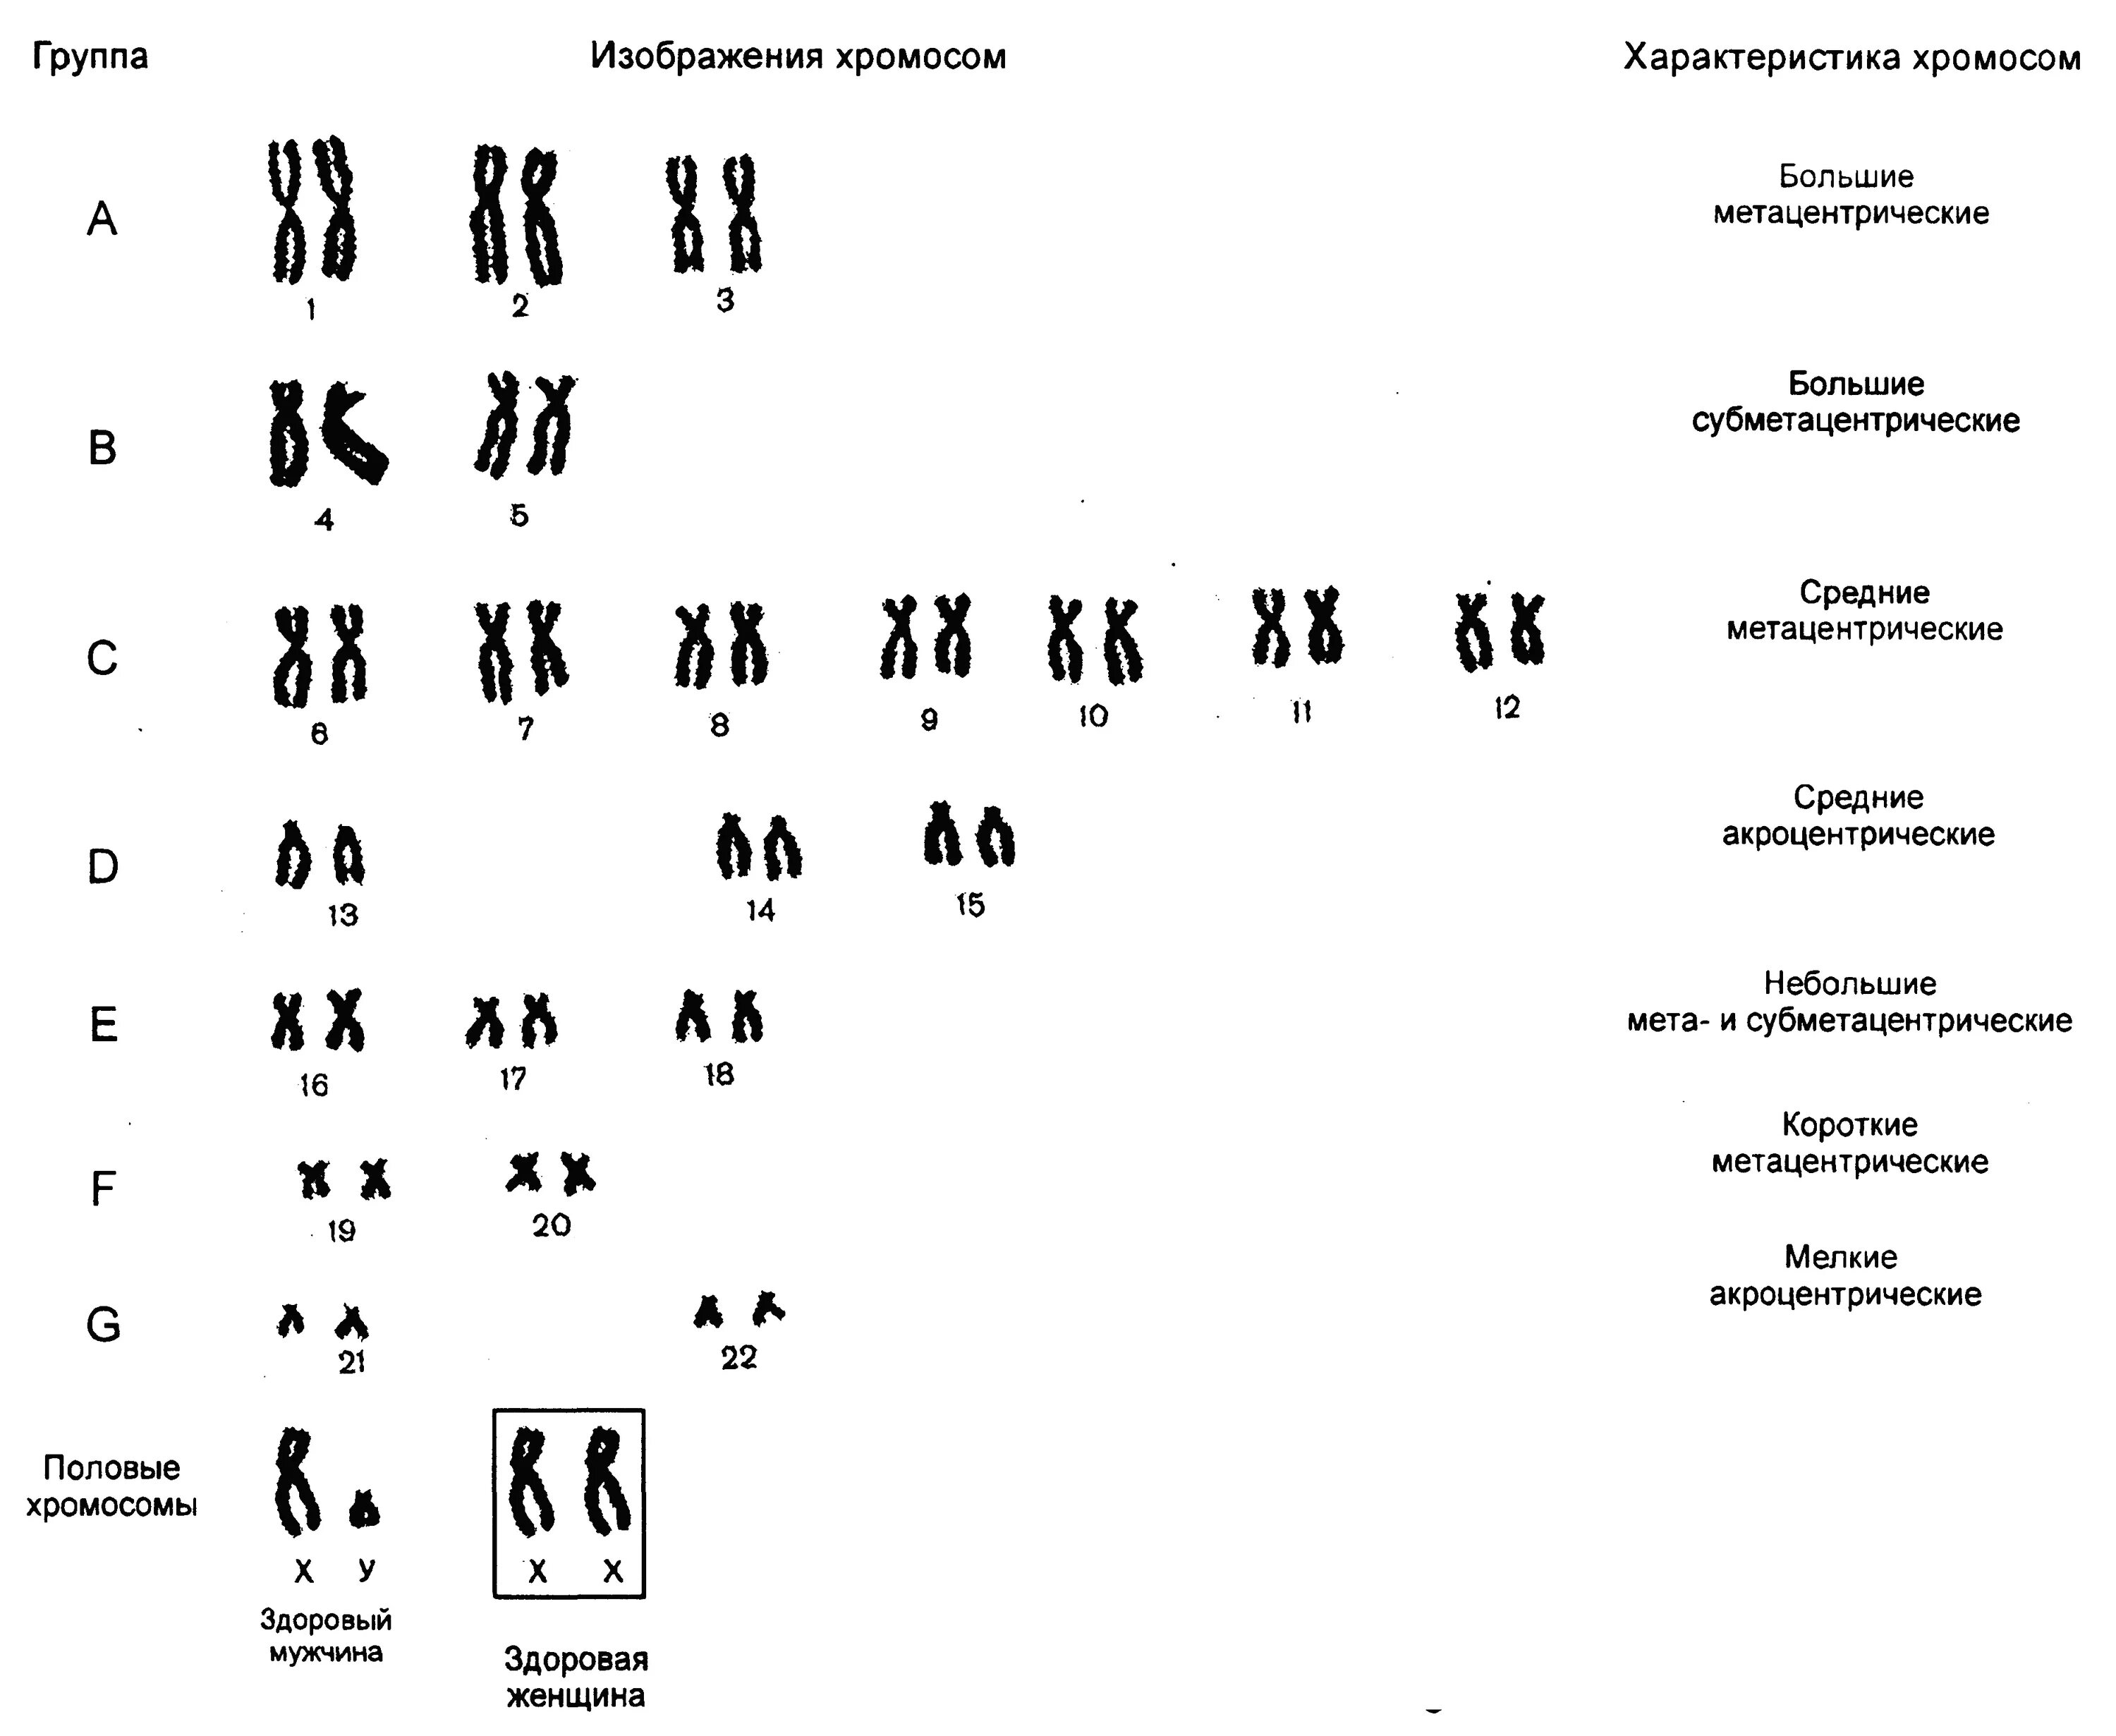 Хромосом группы d. Метацентрические хромосомы в кариотипе человека. Кариограмма и кариотип человека. Кариограмма и идиограмма. Идиограмма кариотипа.